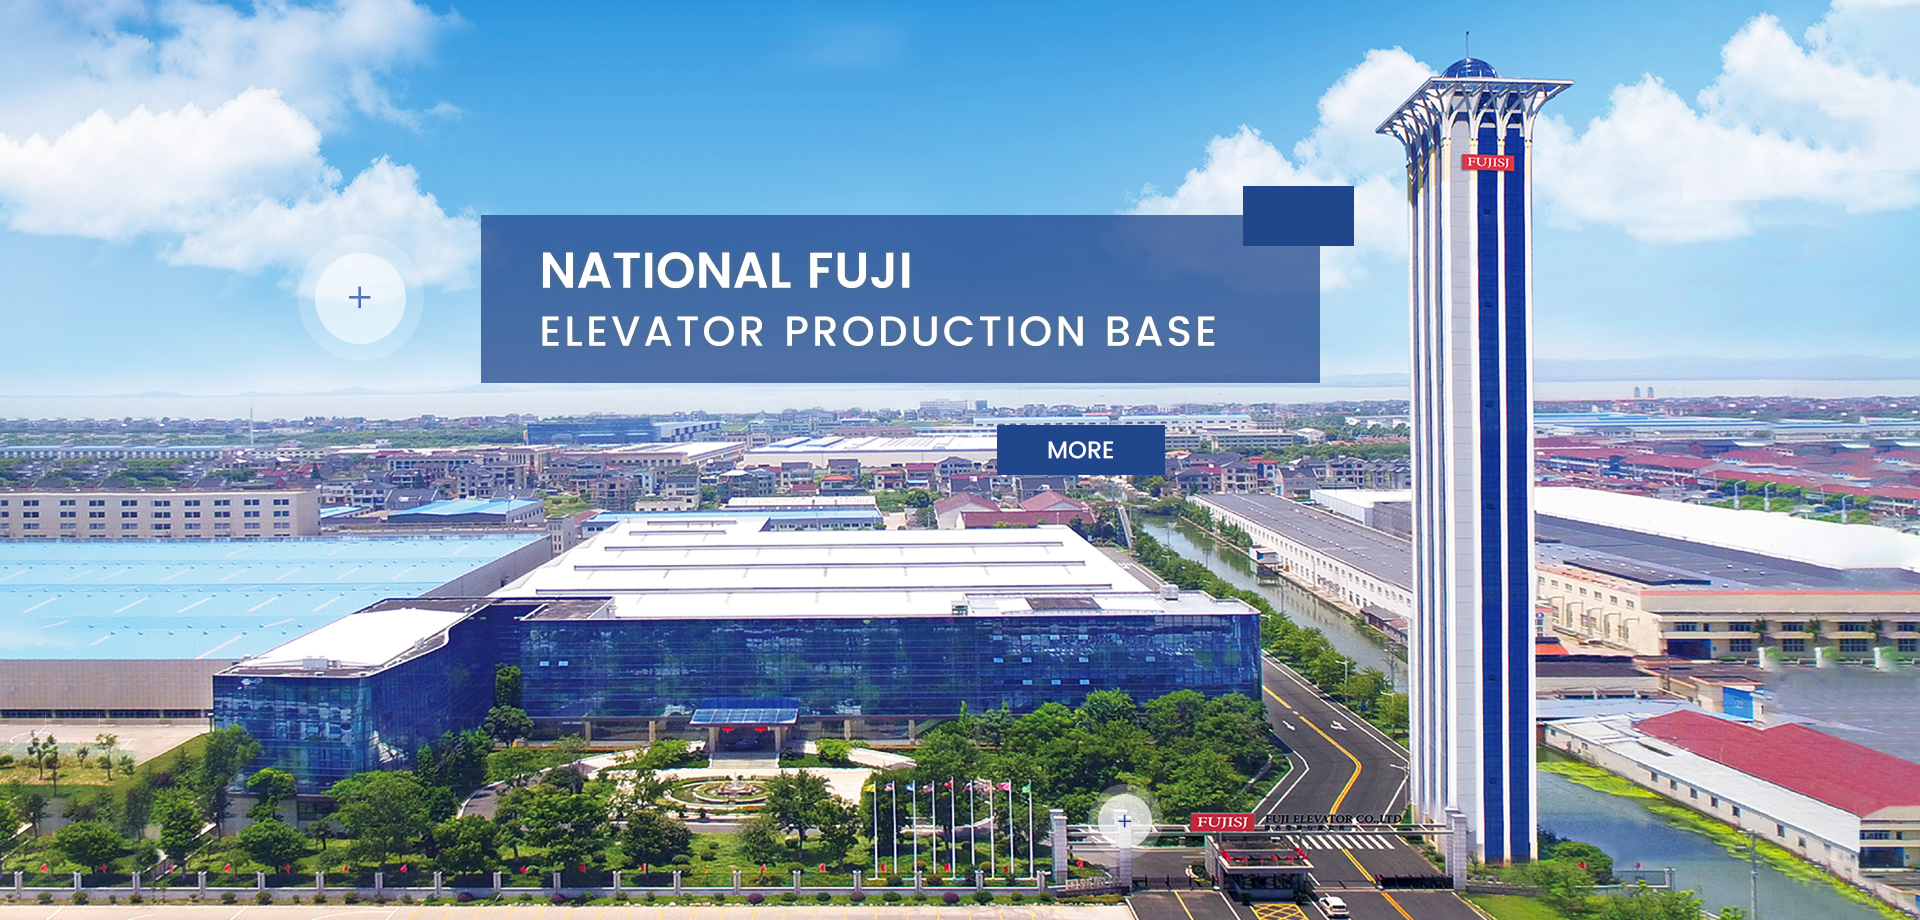 Национальная производственная база лифтов Fuji